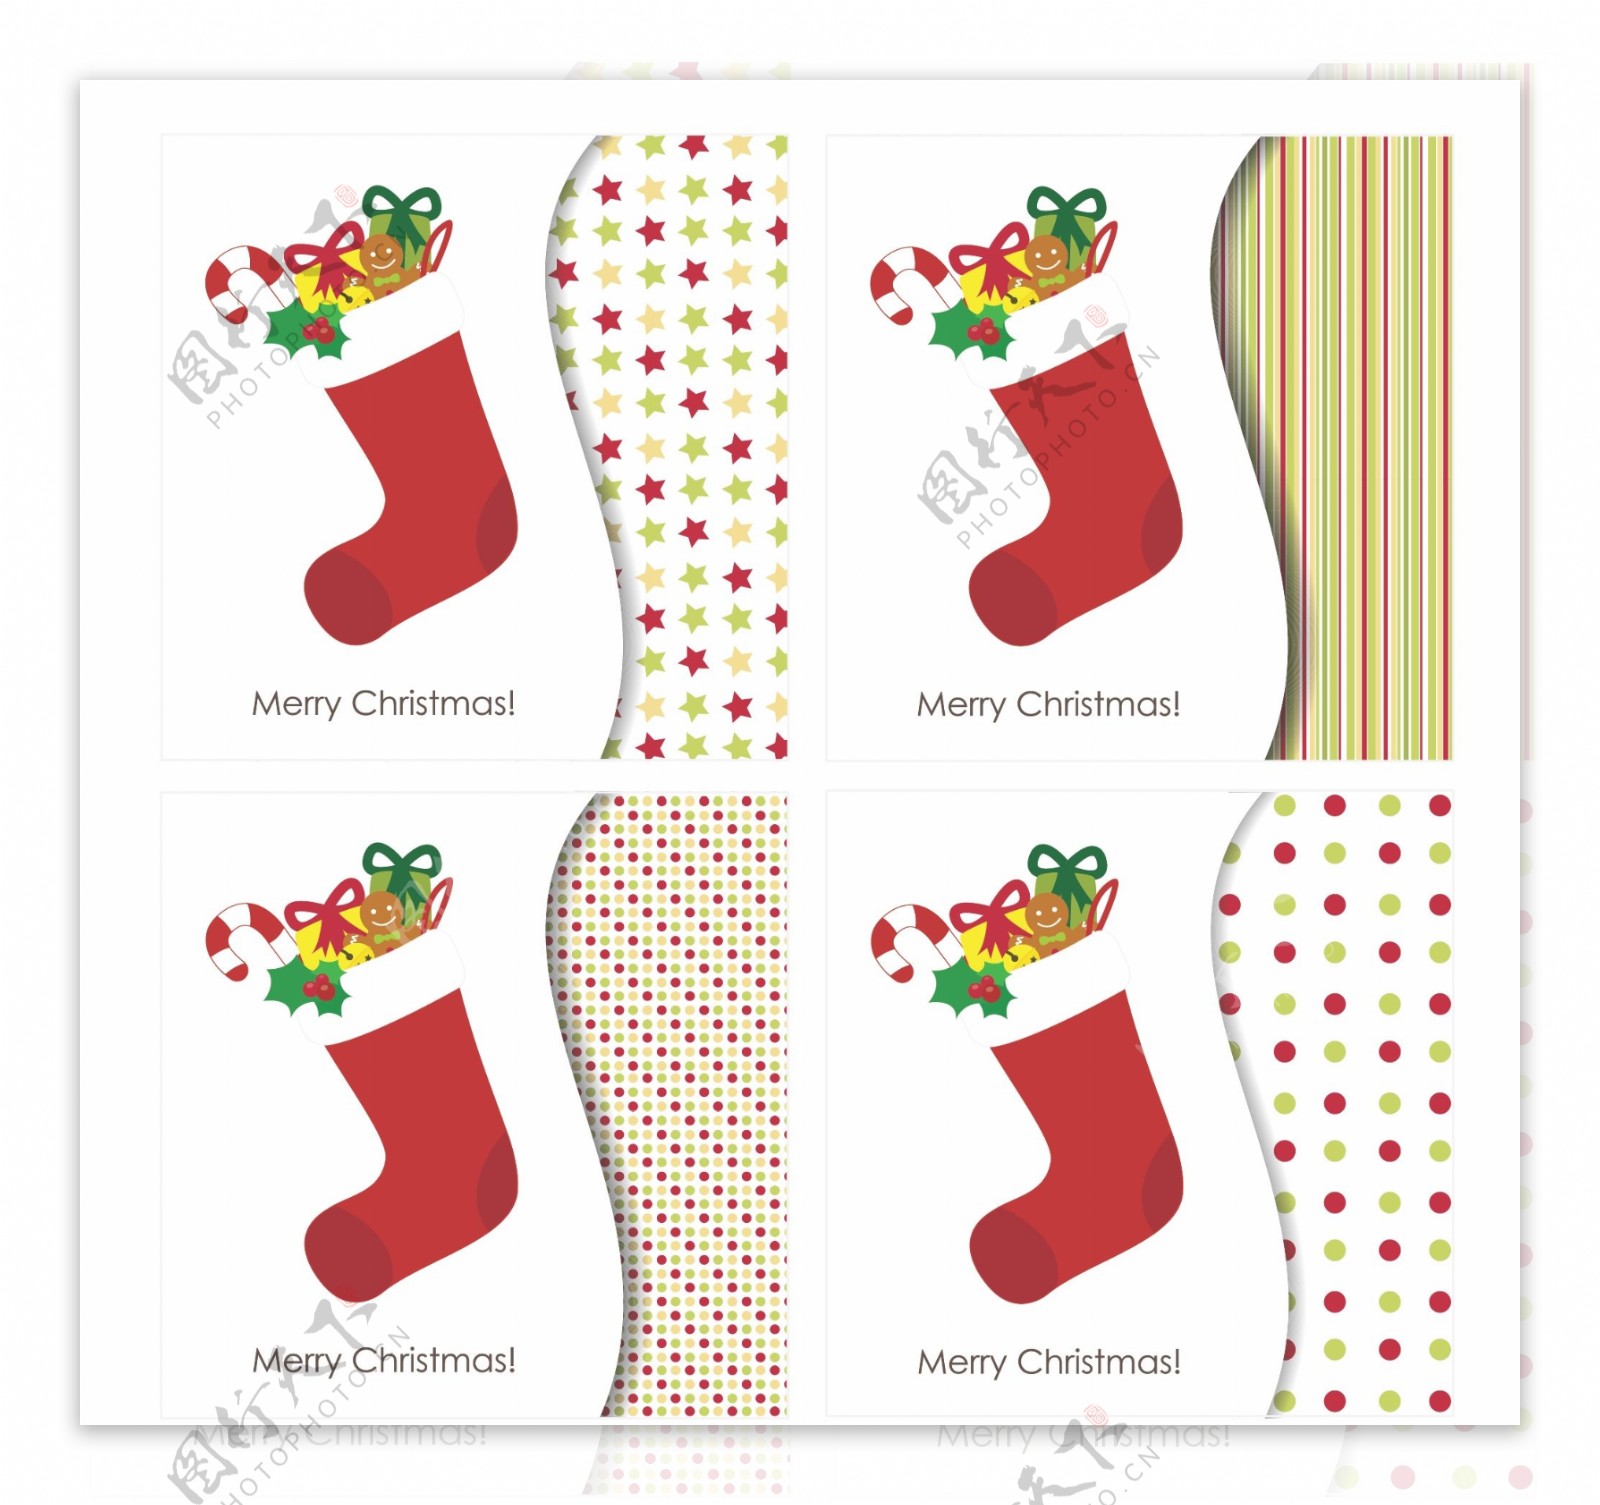 裝滿禮物的聖誕襪图片